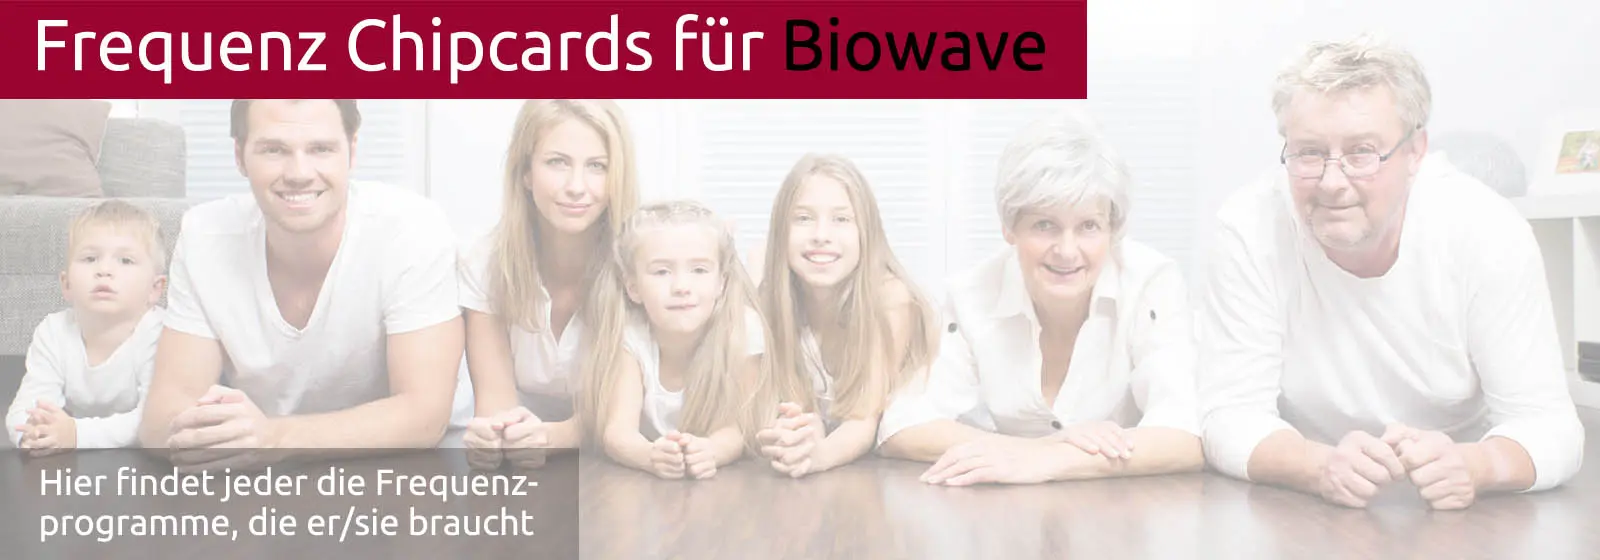 banner-chipcards-biowave